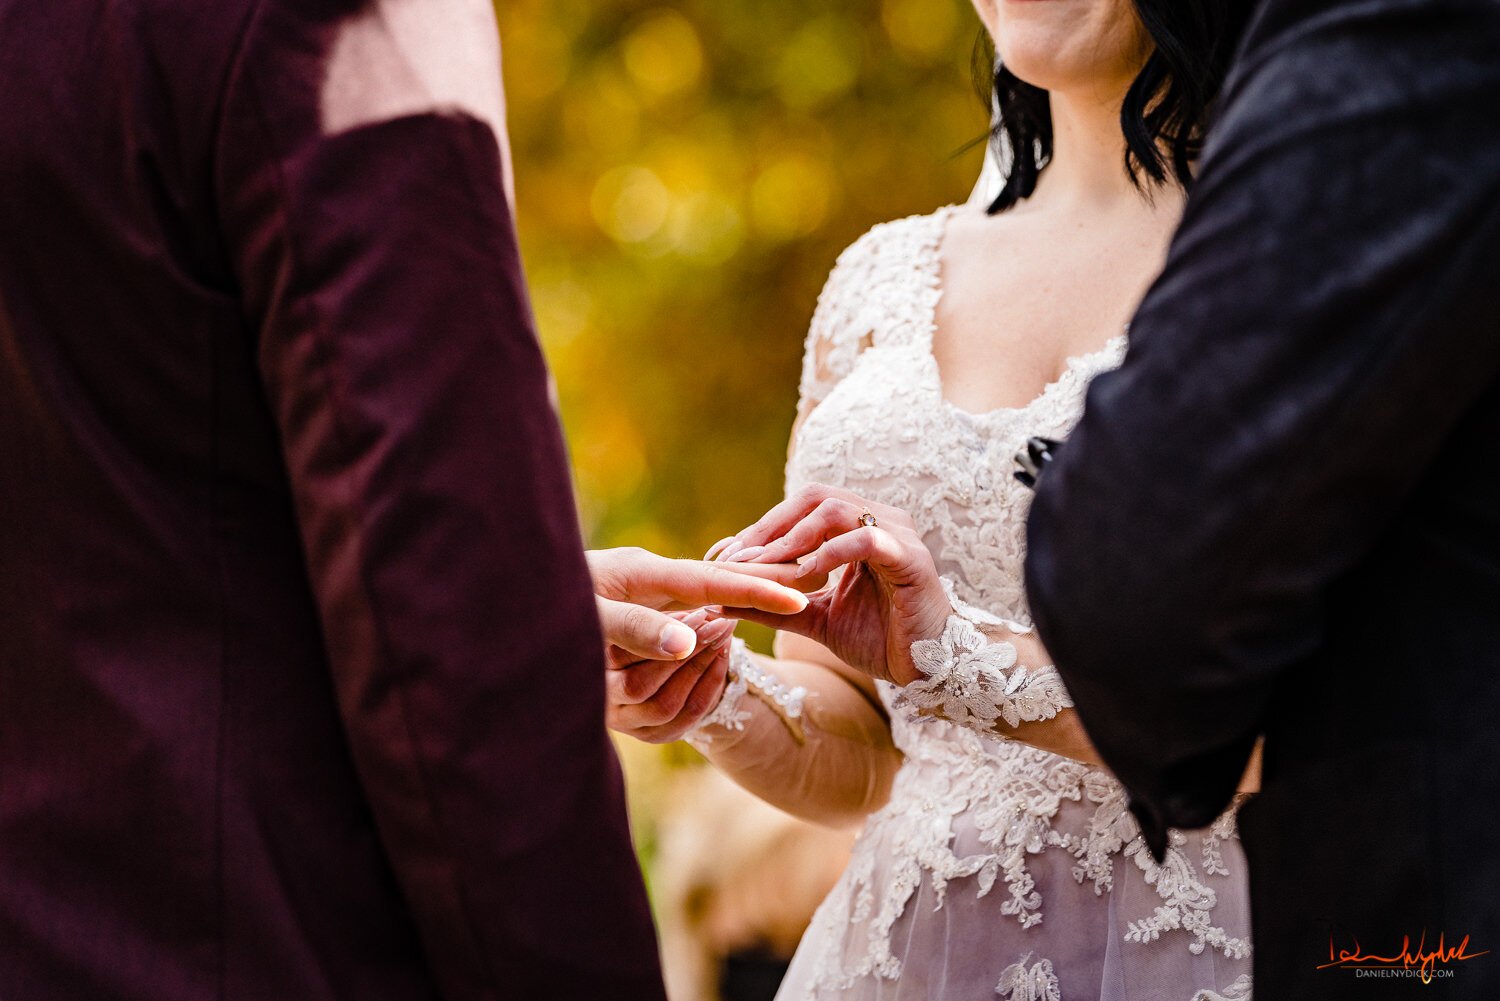 nj pinup goth bride putting ring on groom's finger during nj hal